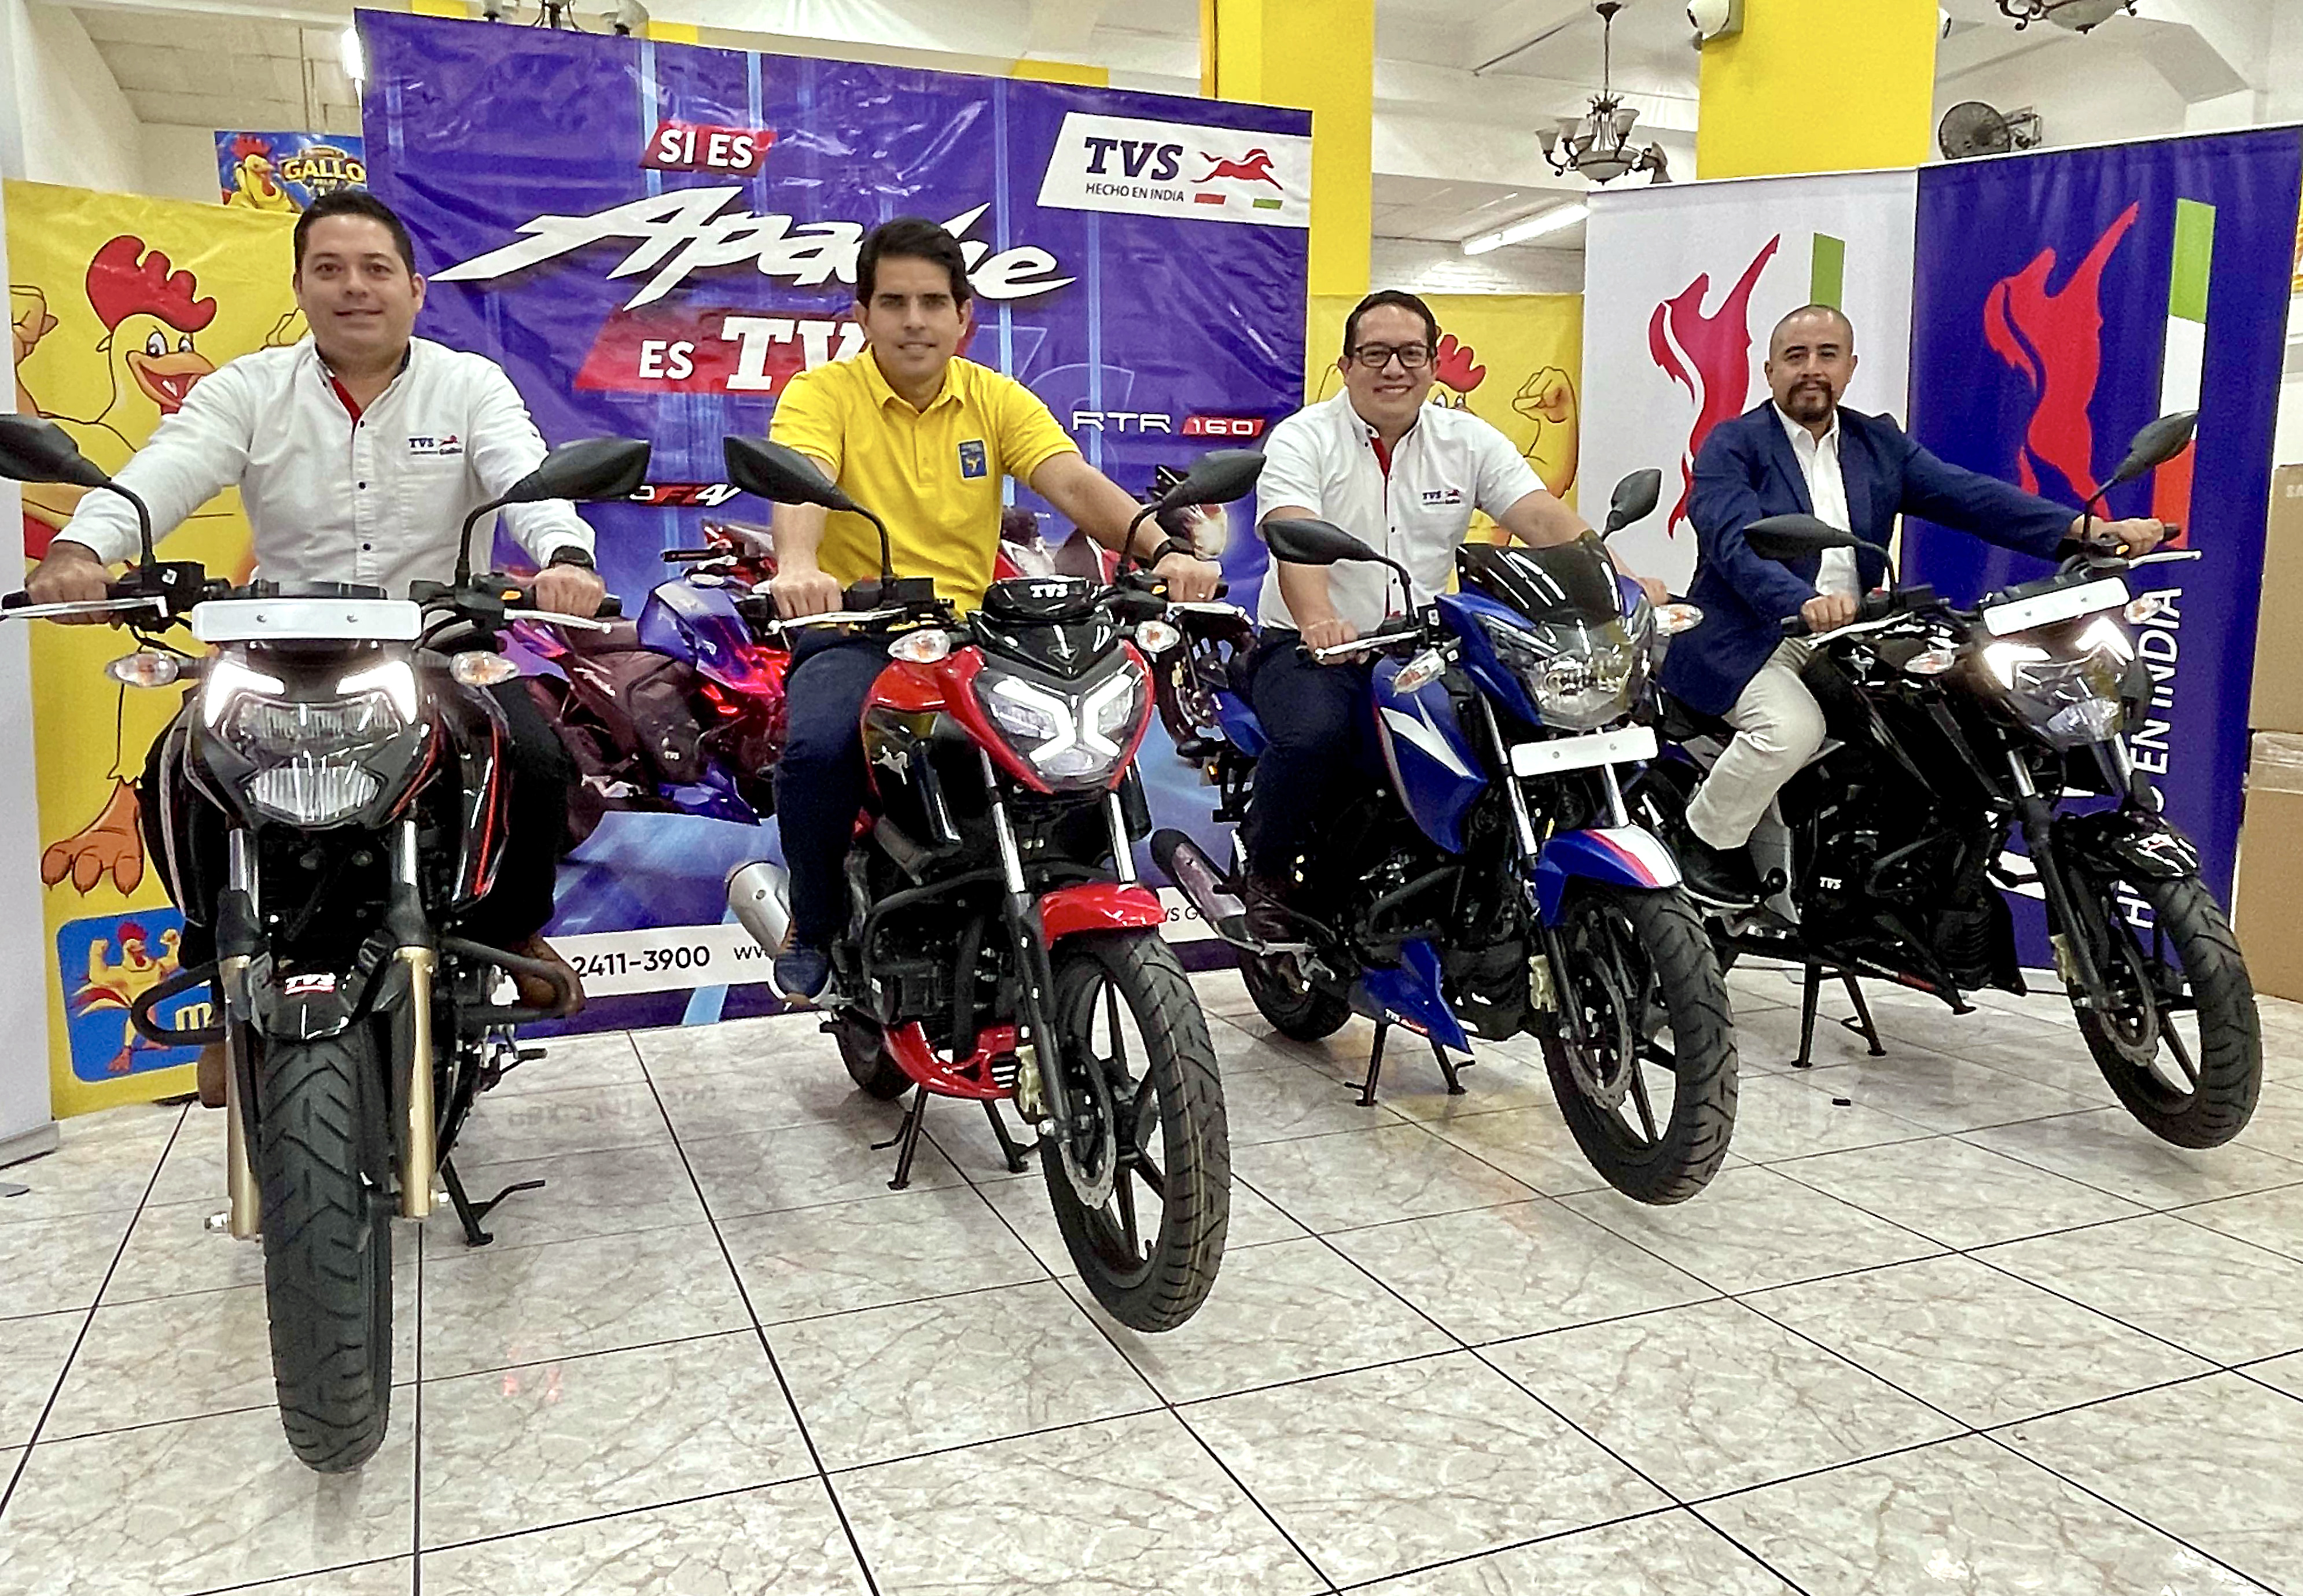 El Gallo más Gallo lleva a sus tiendas las marca TVS Motor Company, quien es el tercer mayor fabricante de motos de la India. Foto Prensa Libre: Cortesía